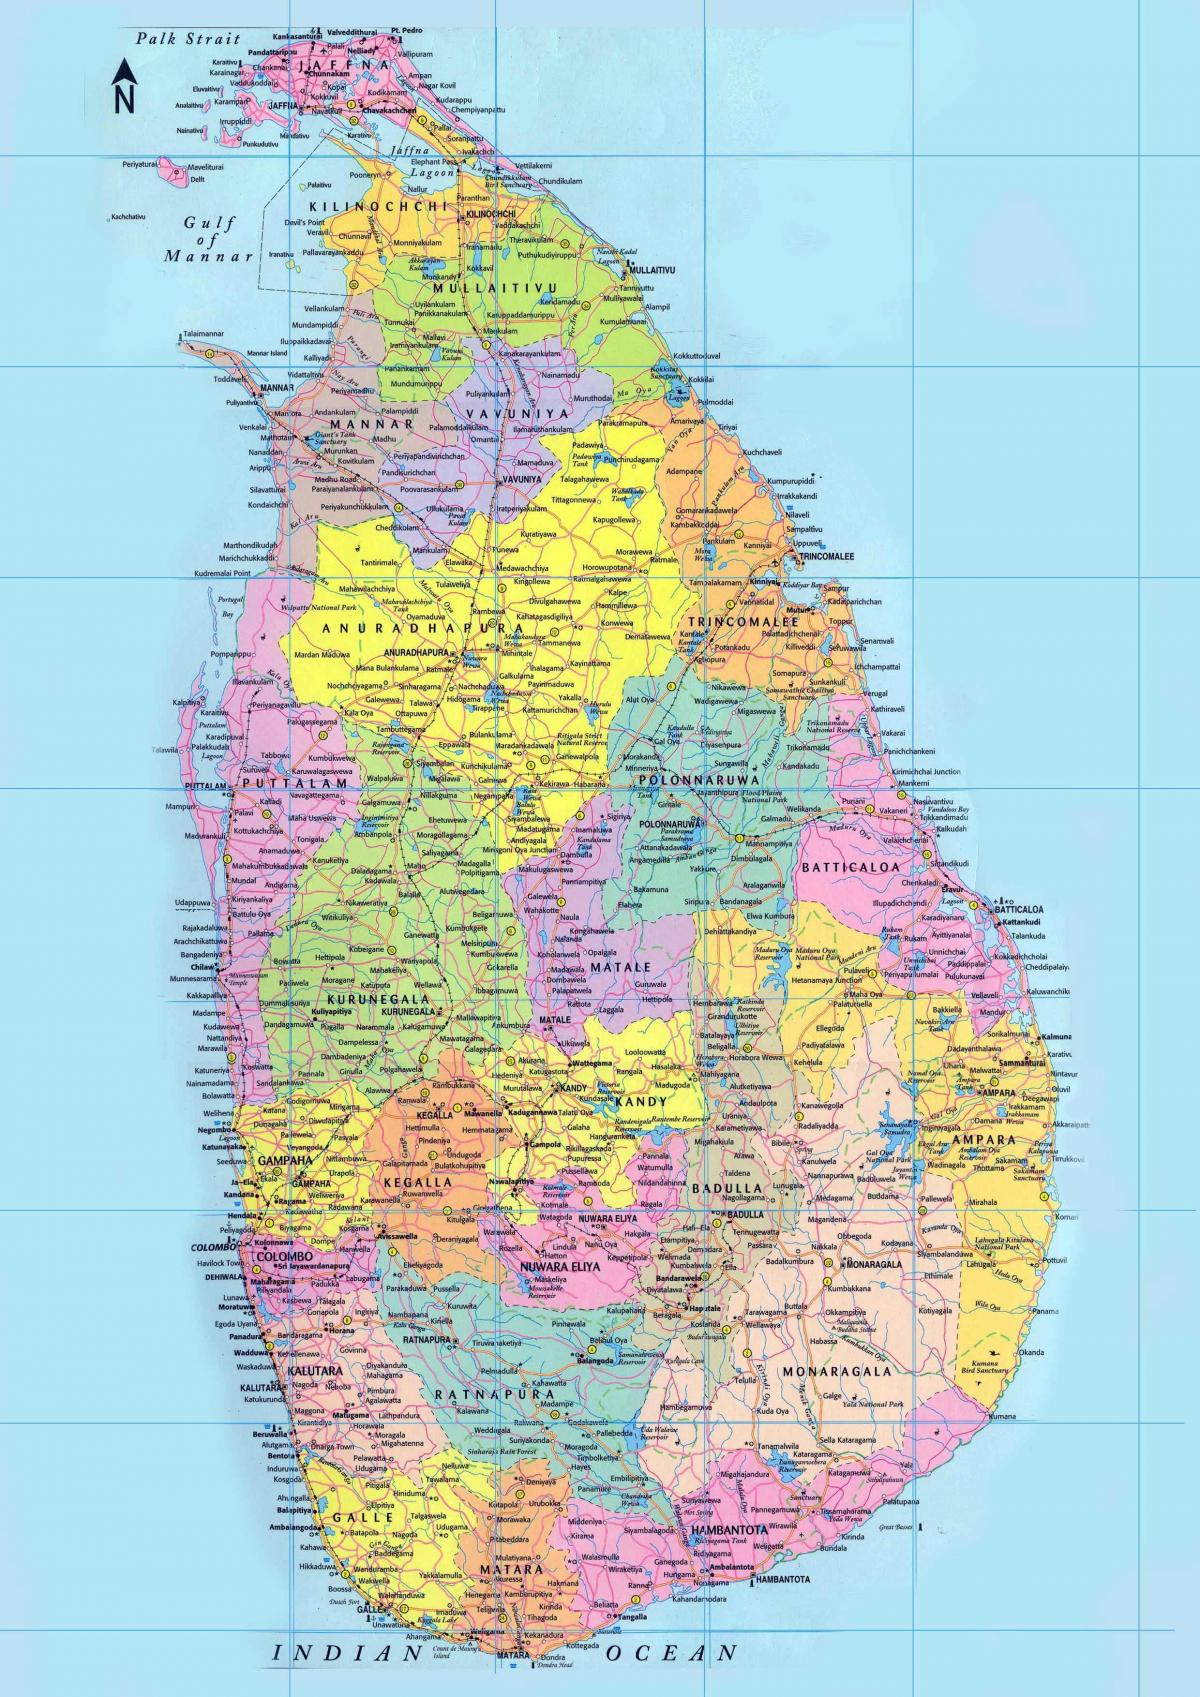 mapa zehatza Sri Lanka dituzten errepideak